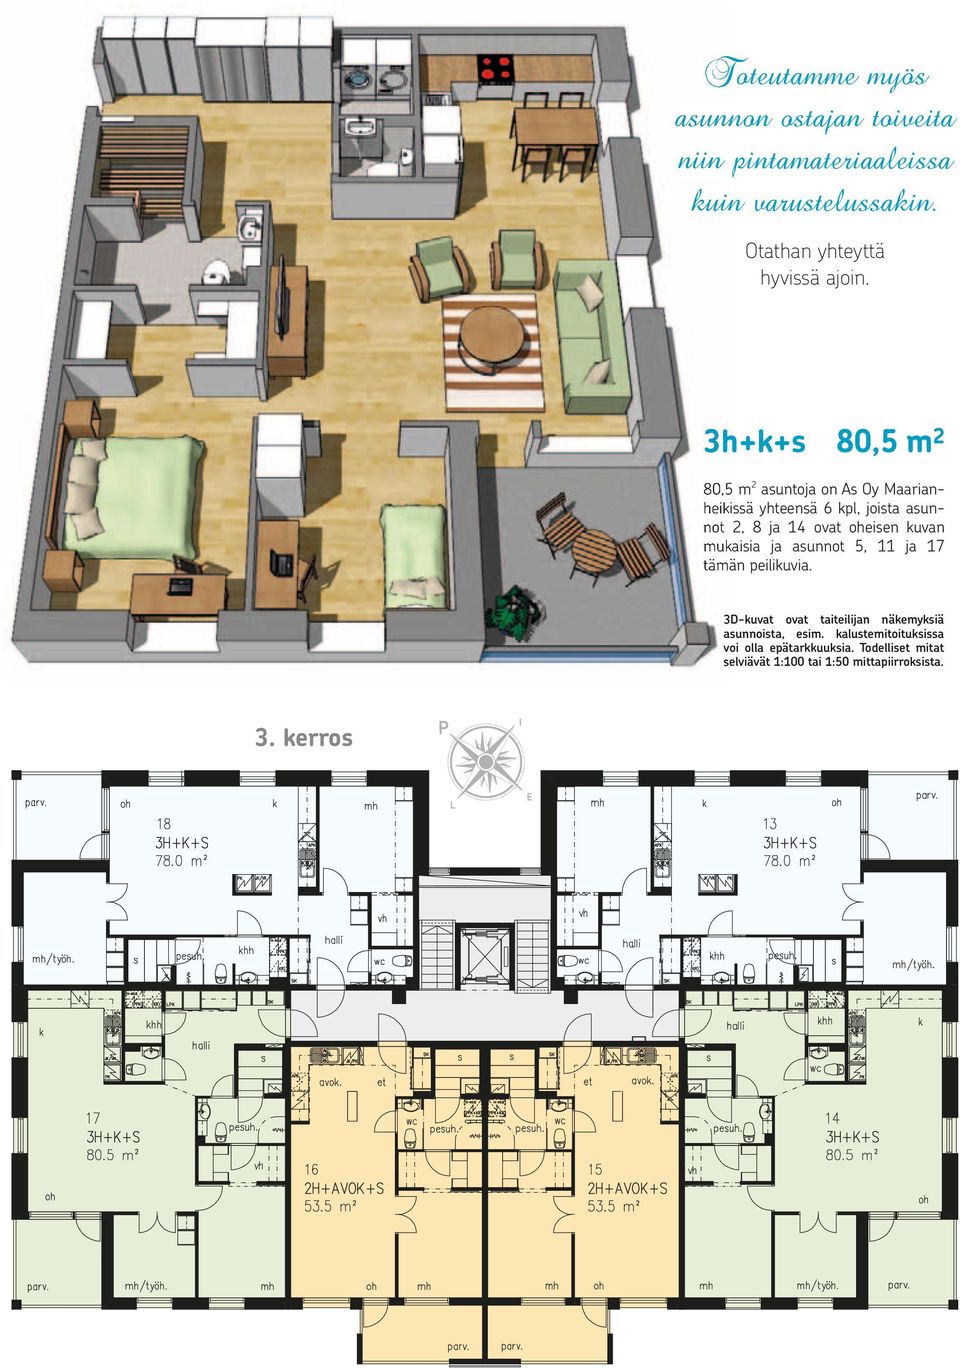 3h+k+s 80,5 m 2 80,5 m 2 asuntoja on As Oy Maarian- heikissä yhteensä 6 kpl, joista asunnot 2, 8 ja 14 ovat oheisen